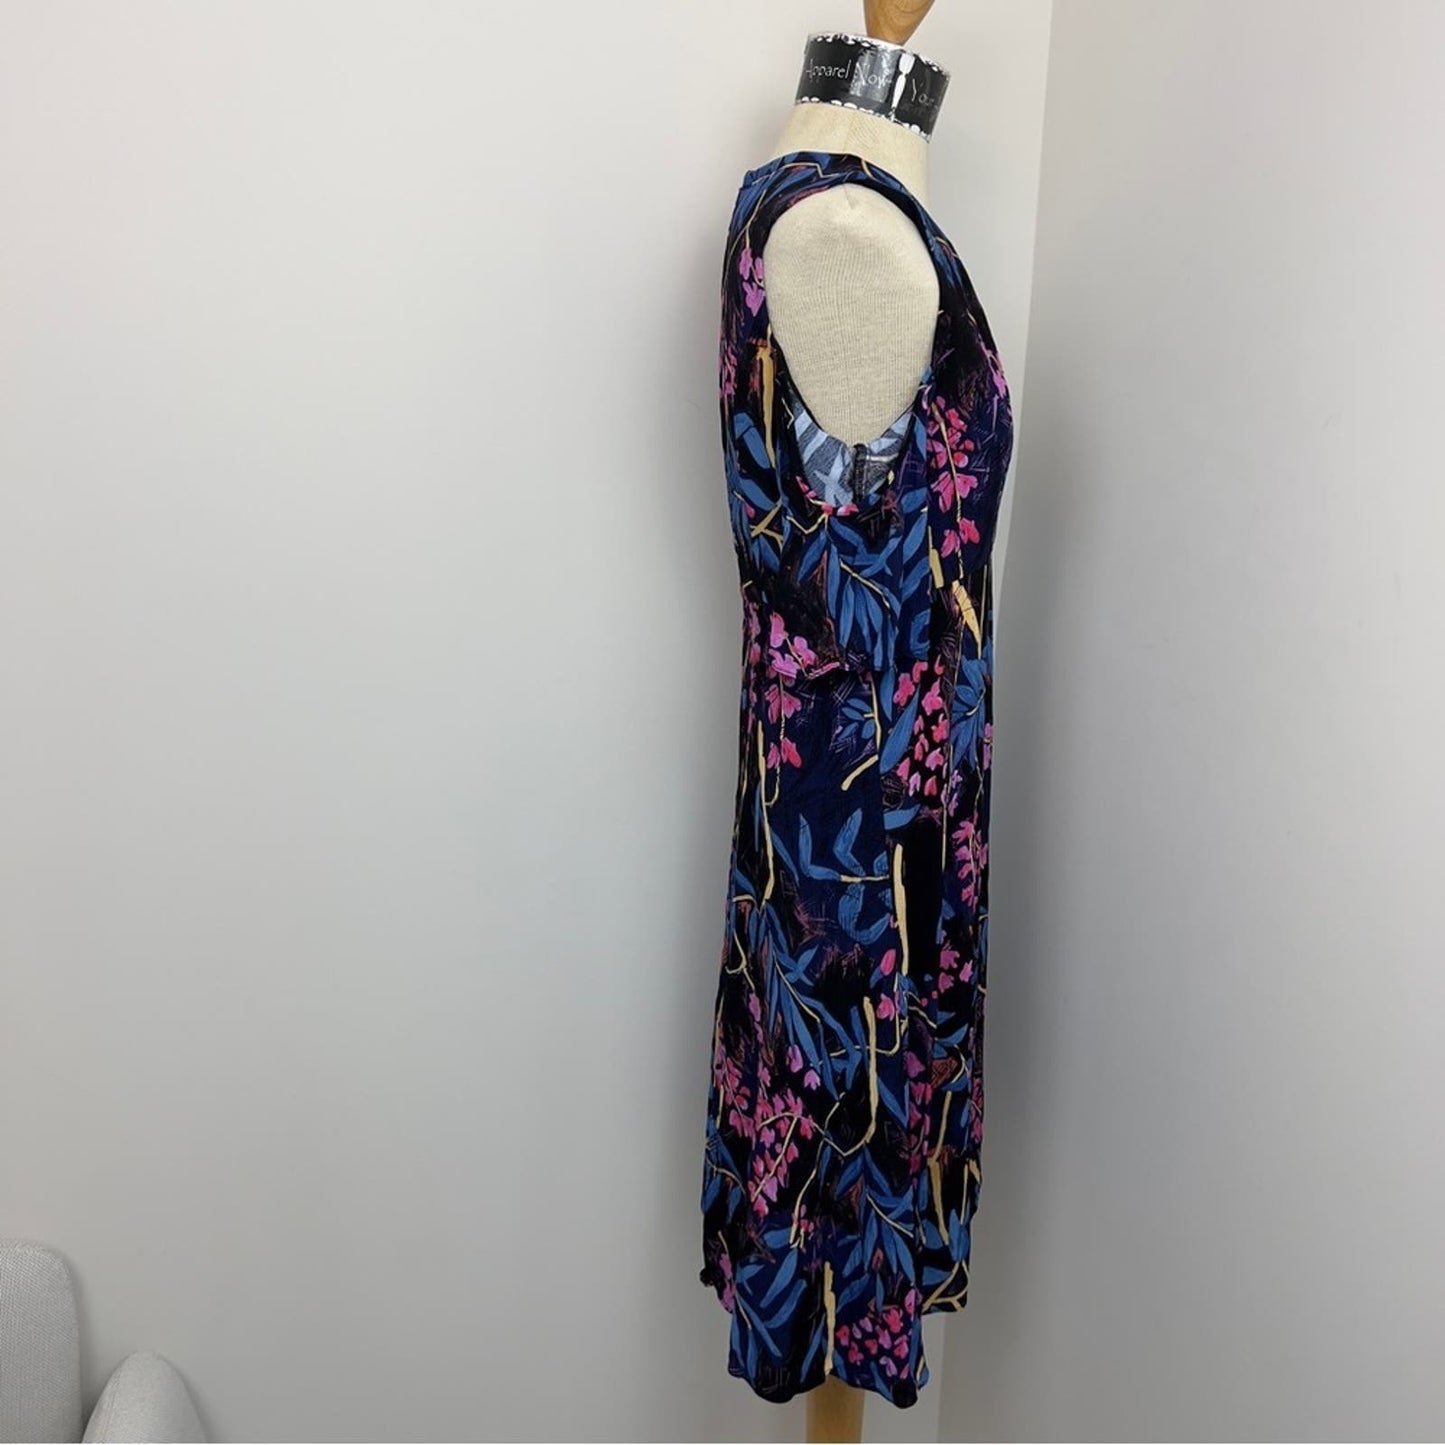 Anthropology ✨Maeve ✨ Elia Cold Shoulder Floral Print A line Dress size 6 (102)